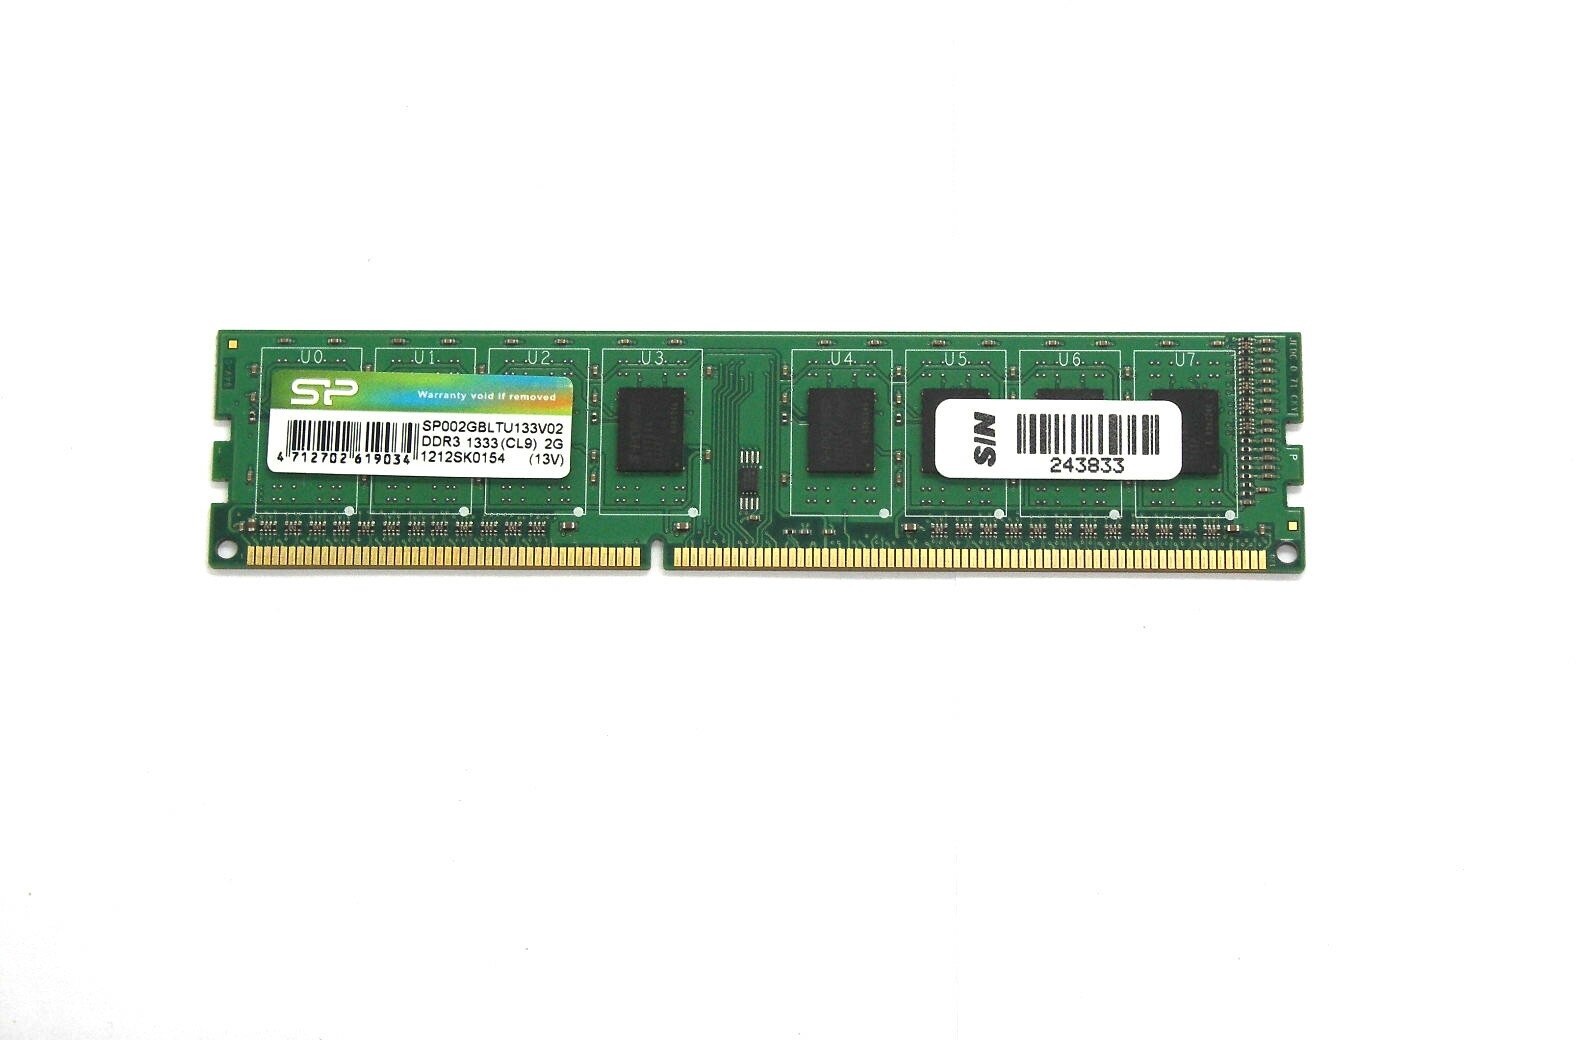 Модуль памяти DIMM DDR3 2Gb 1333Mhz PC-10600 SP SP002GBLTU133V02